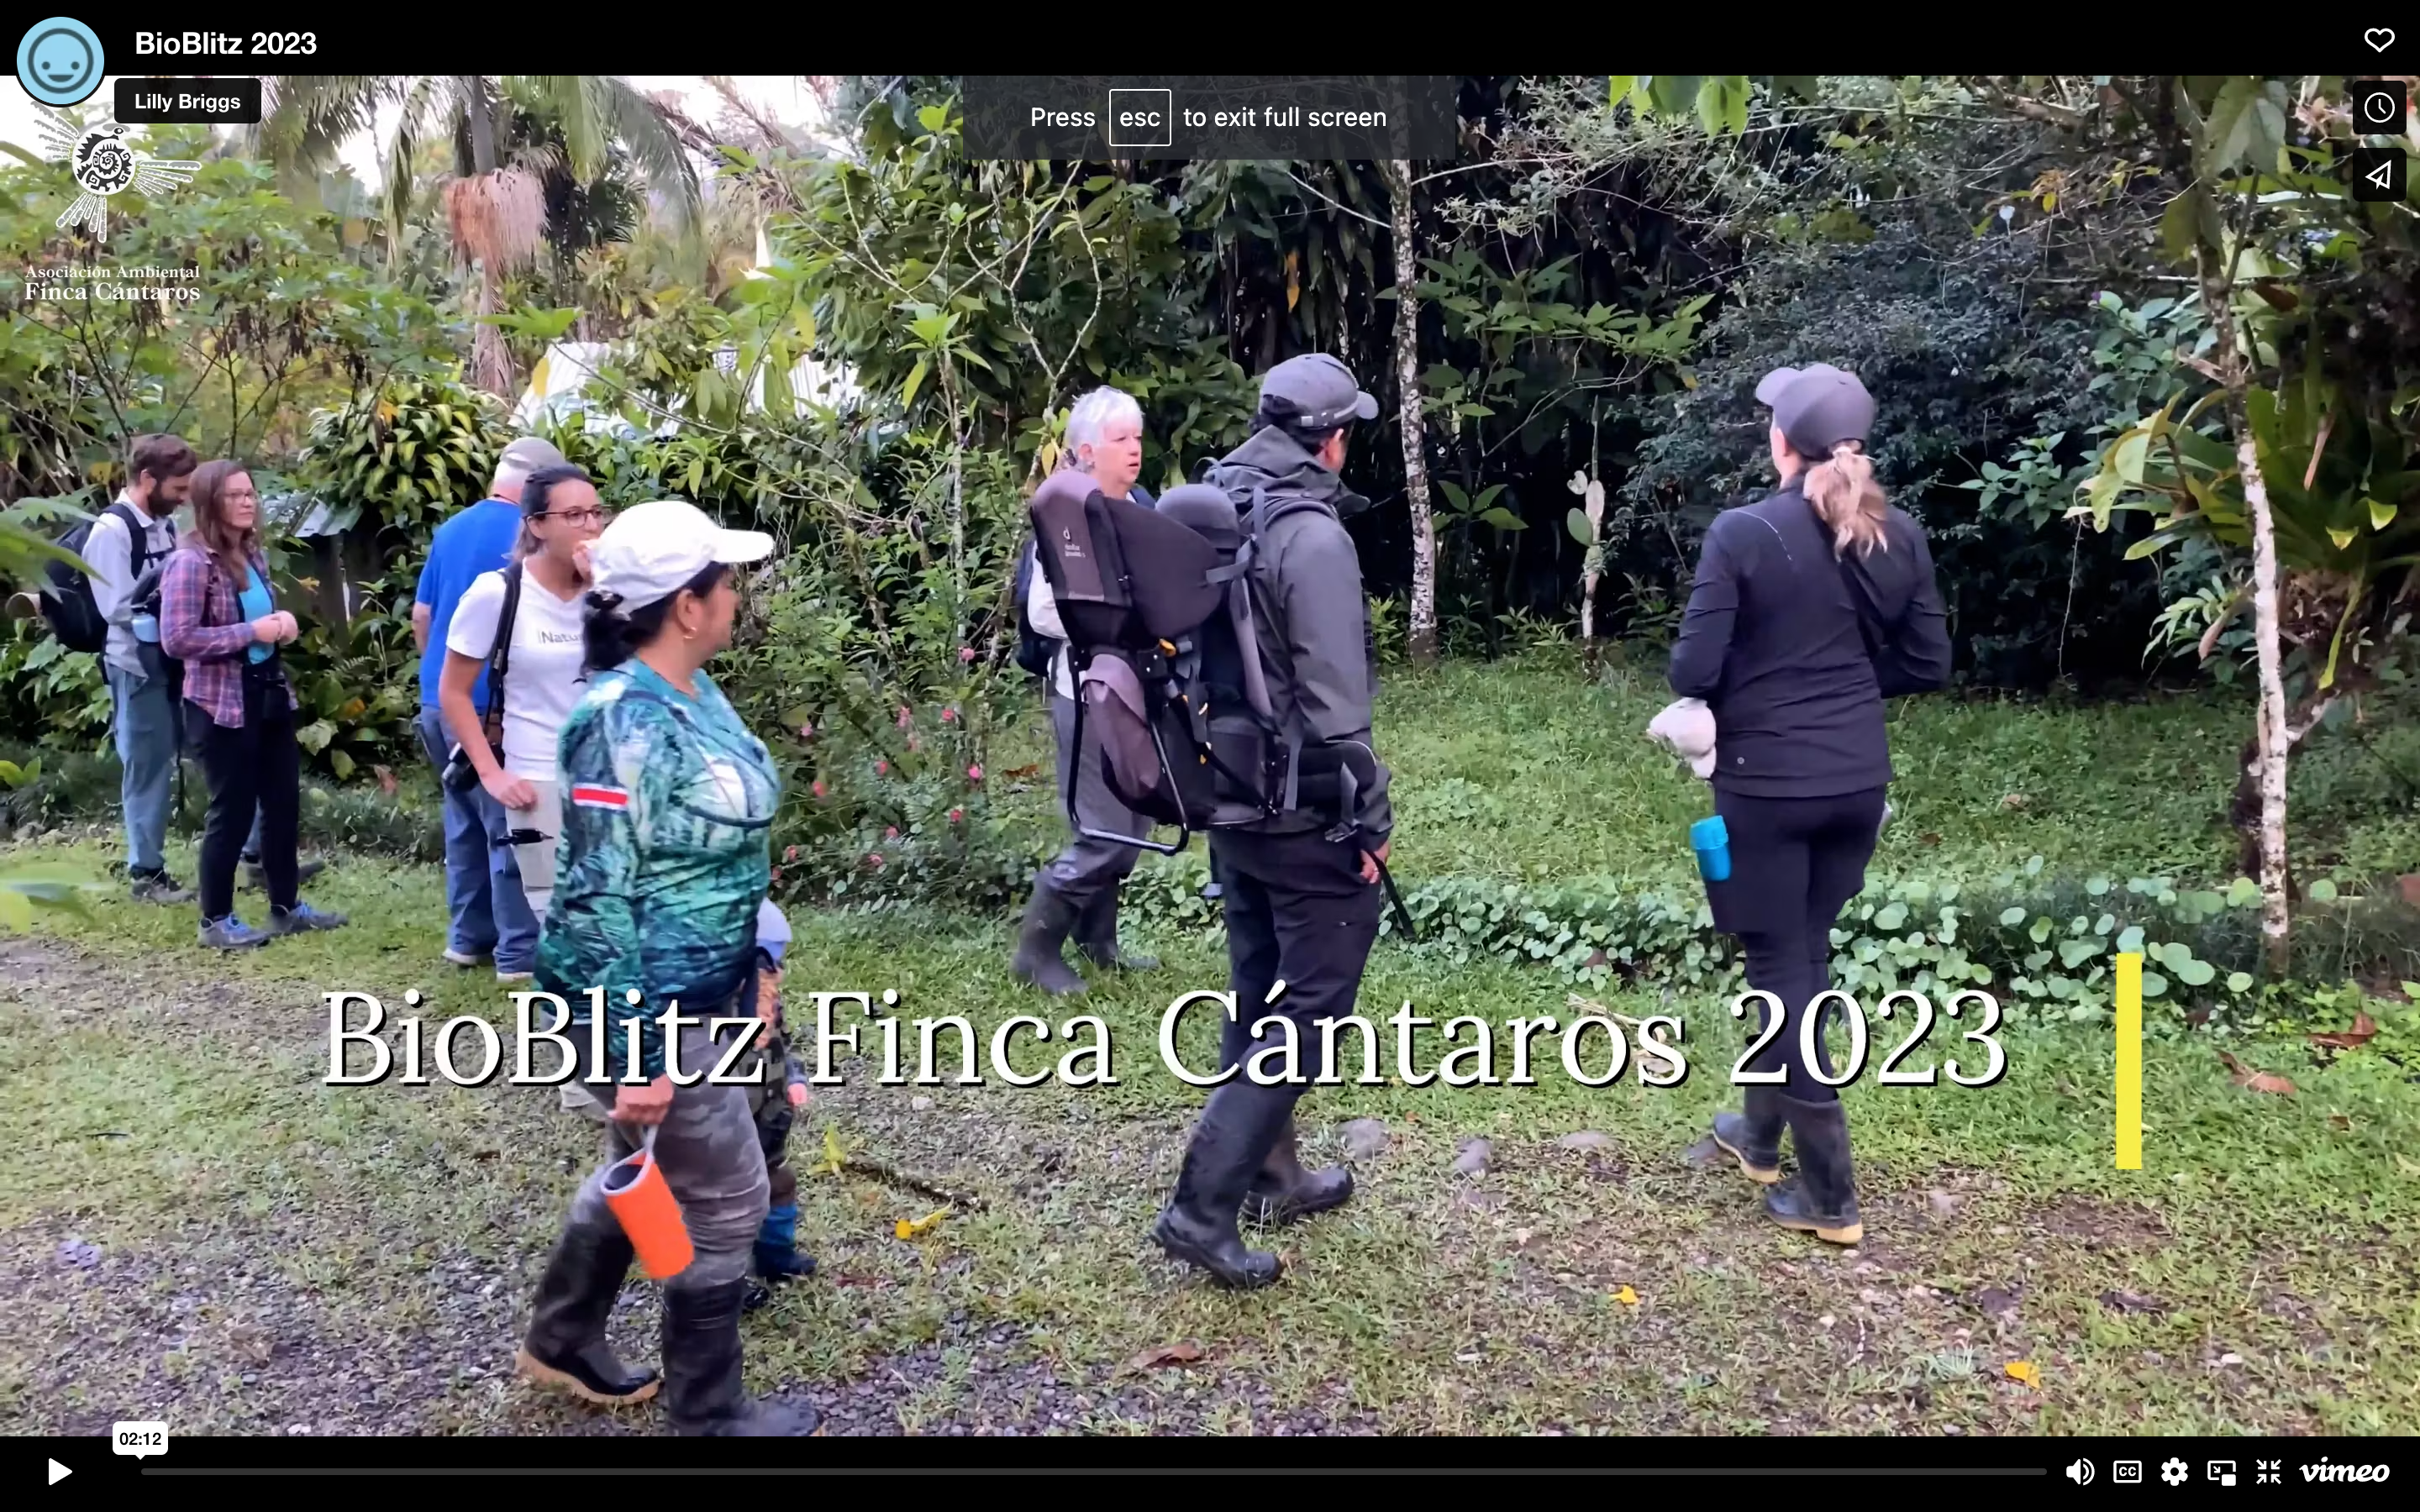 A first for Finca Cántaros: A BioBlitz!